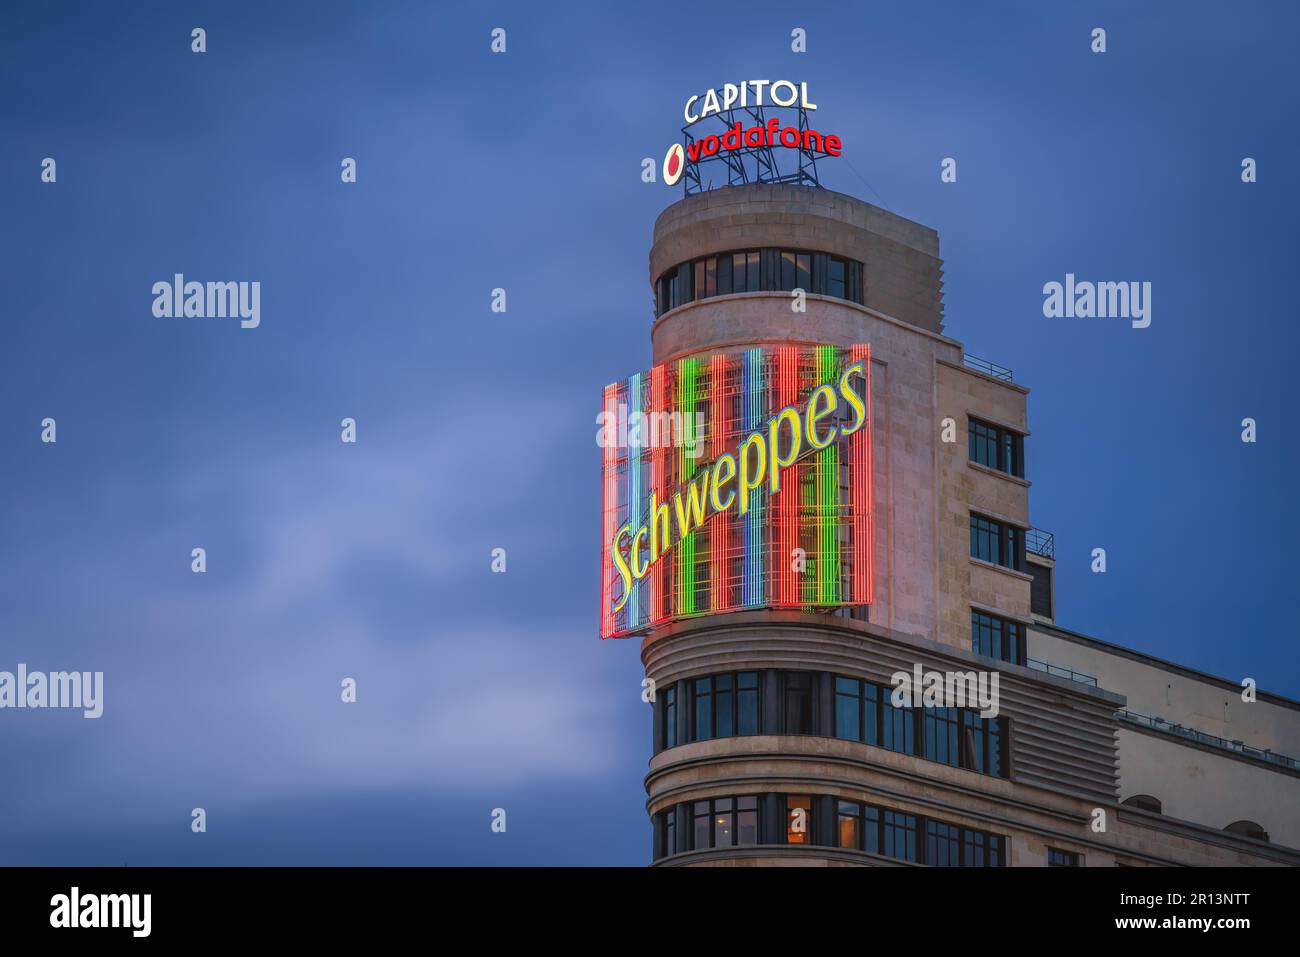 Schweppes Neonschild des Edificio Capitol (oder Carrion) Building in der Gran Via Street - Madrid, Spanien Stockfoto